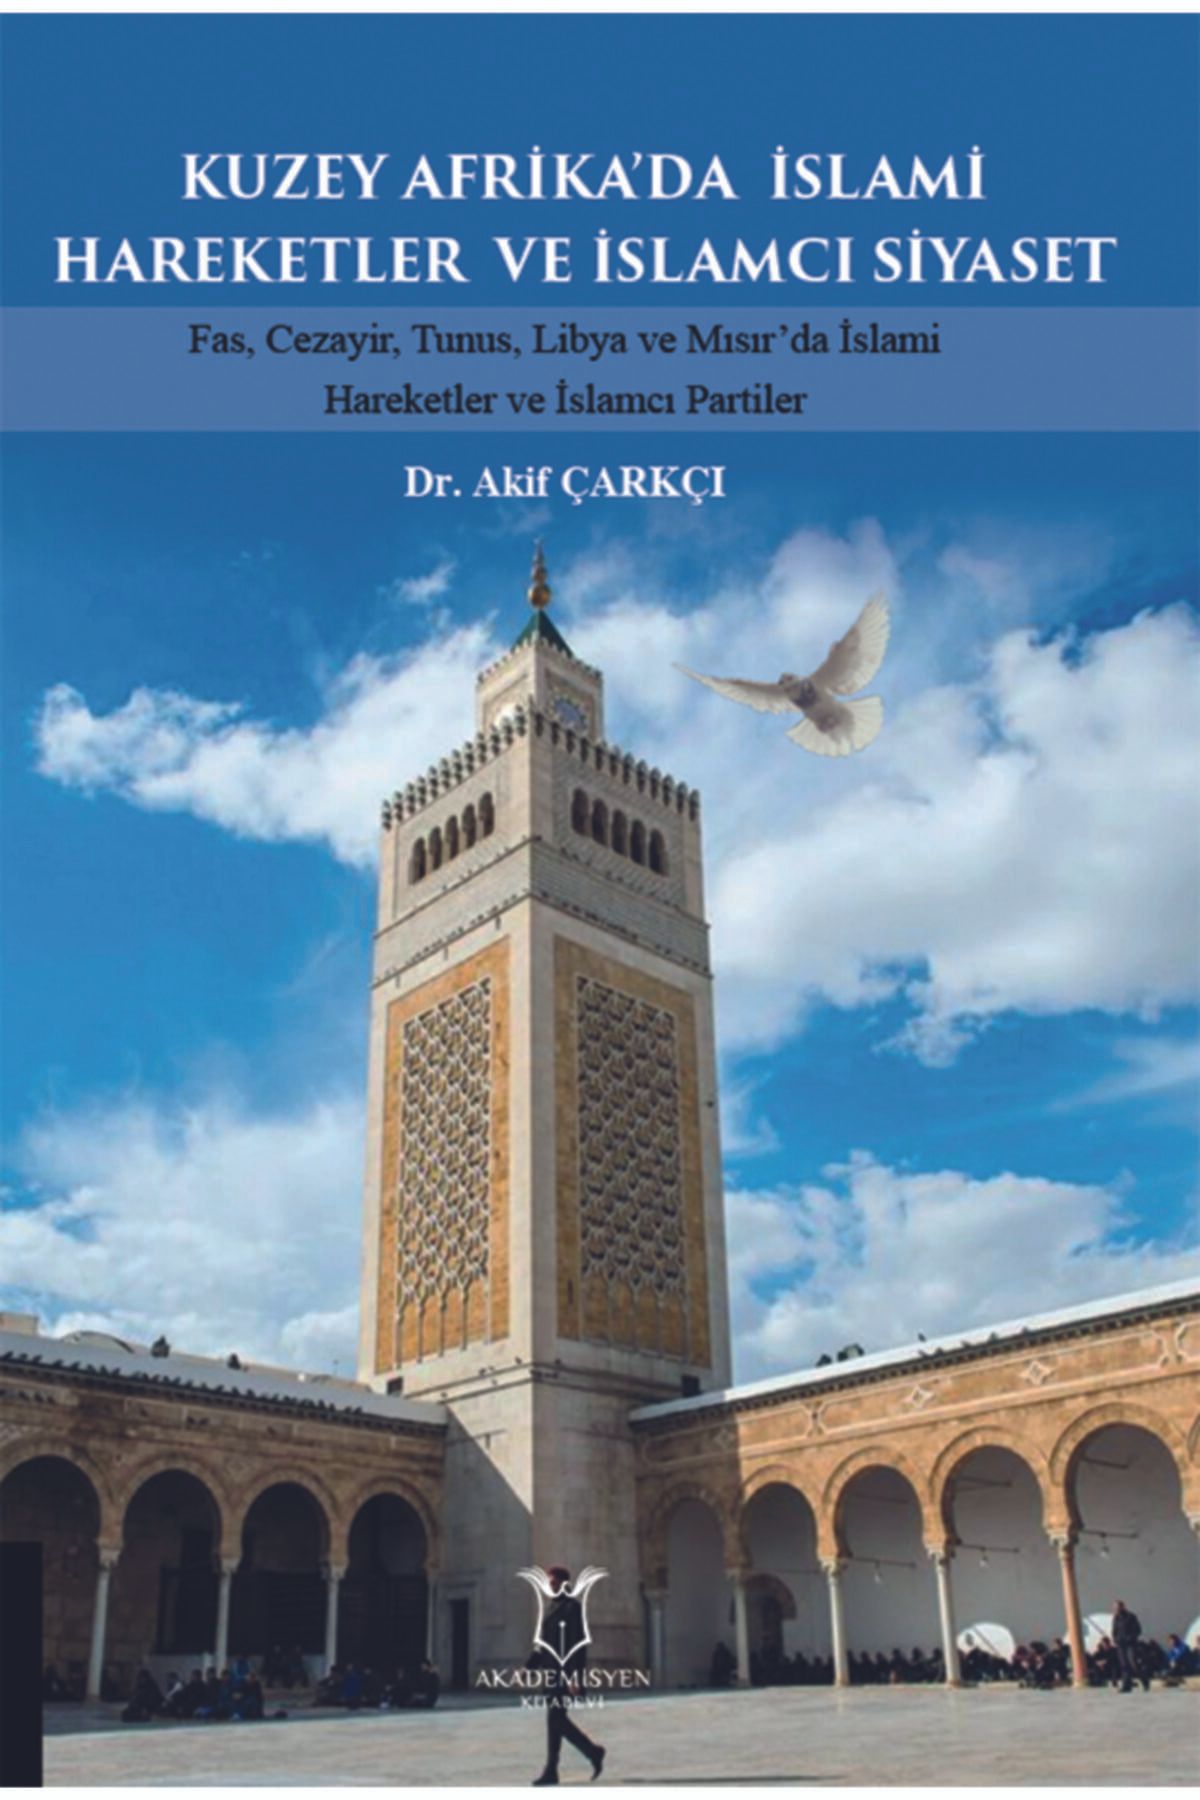 Akademisyen Kitabevi Geçmişten Bugüne Kuzey Afrika’da Islami Hareketler Ve Islamcı Siyaset